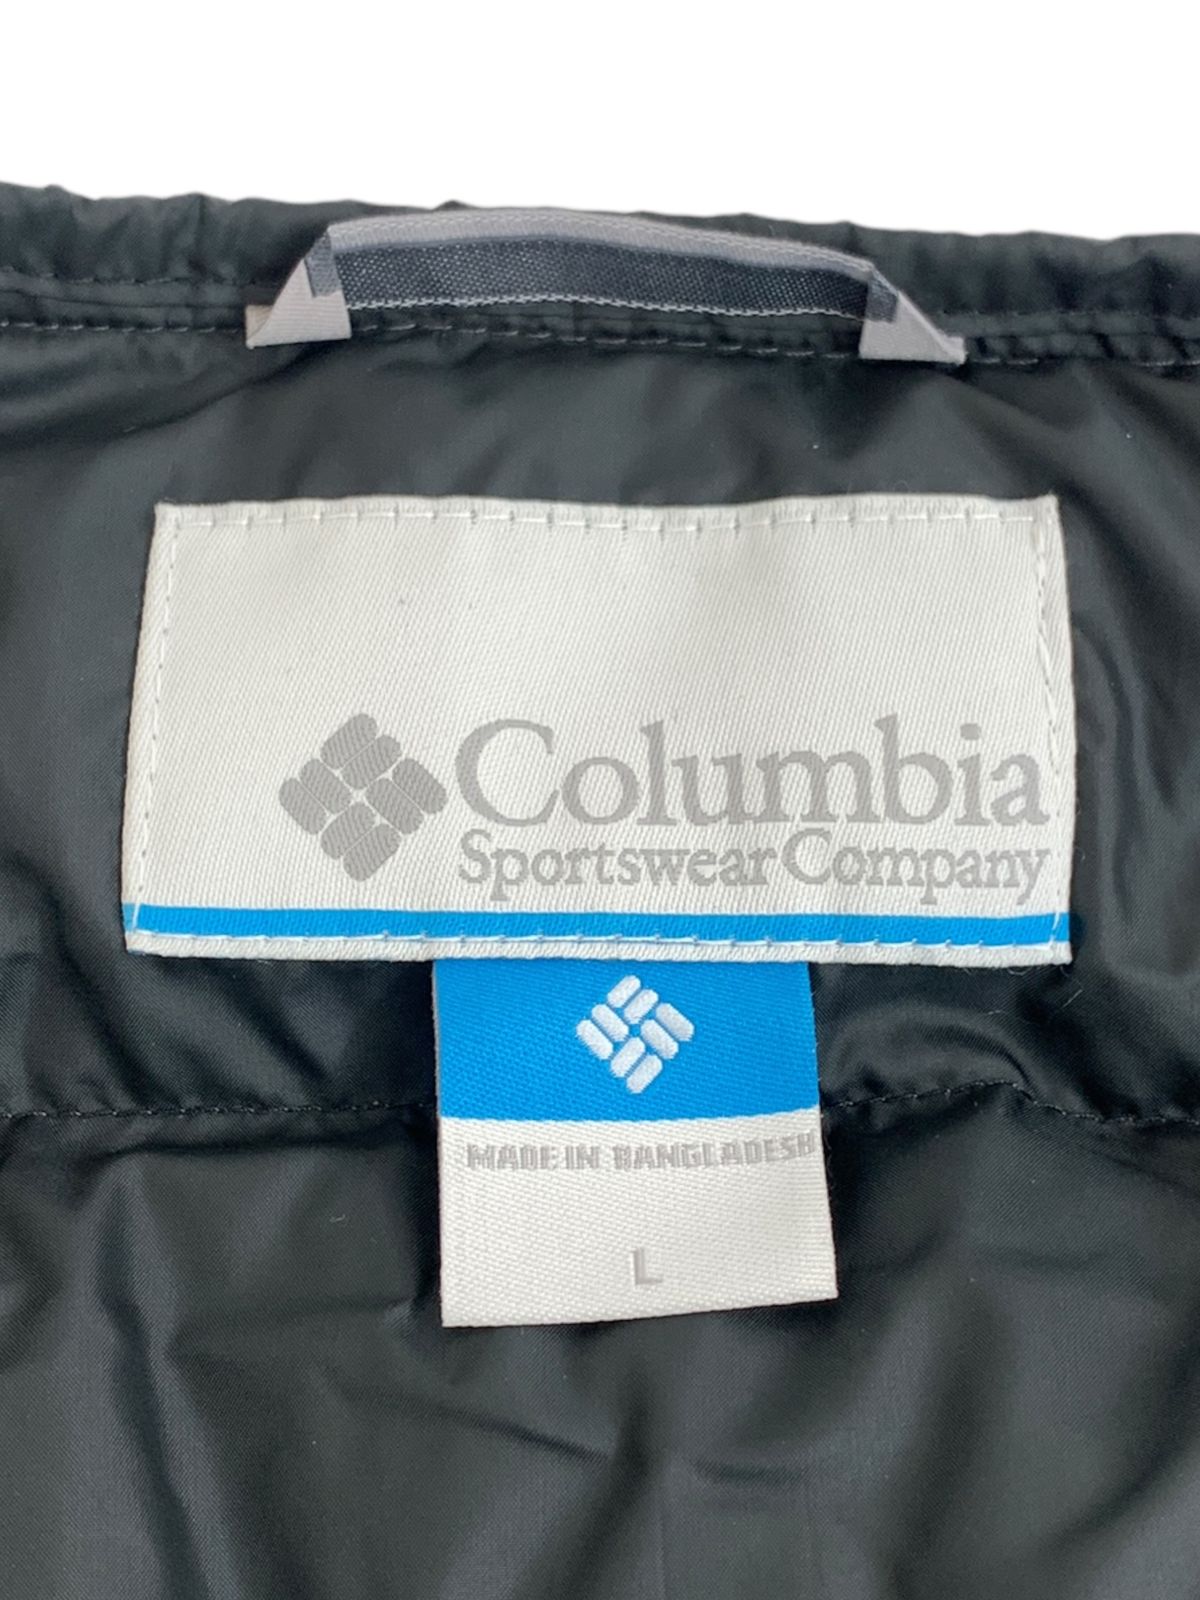 Columbia (コロンビア) ダウンジャケット ナイロン 上着 WM1226 L 